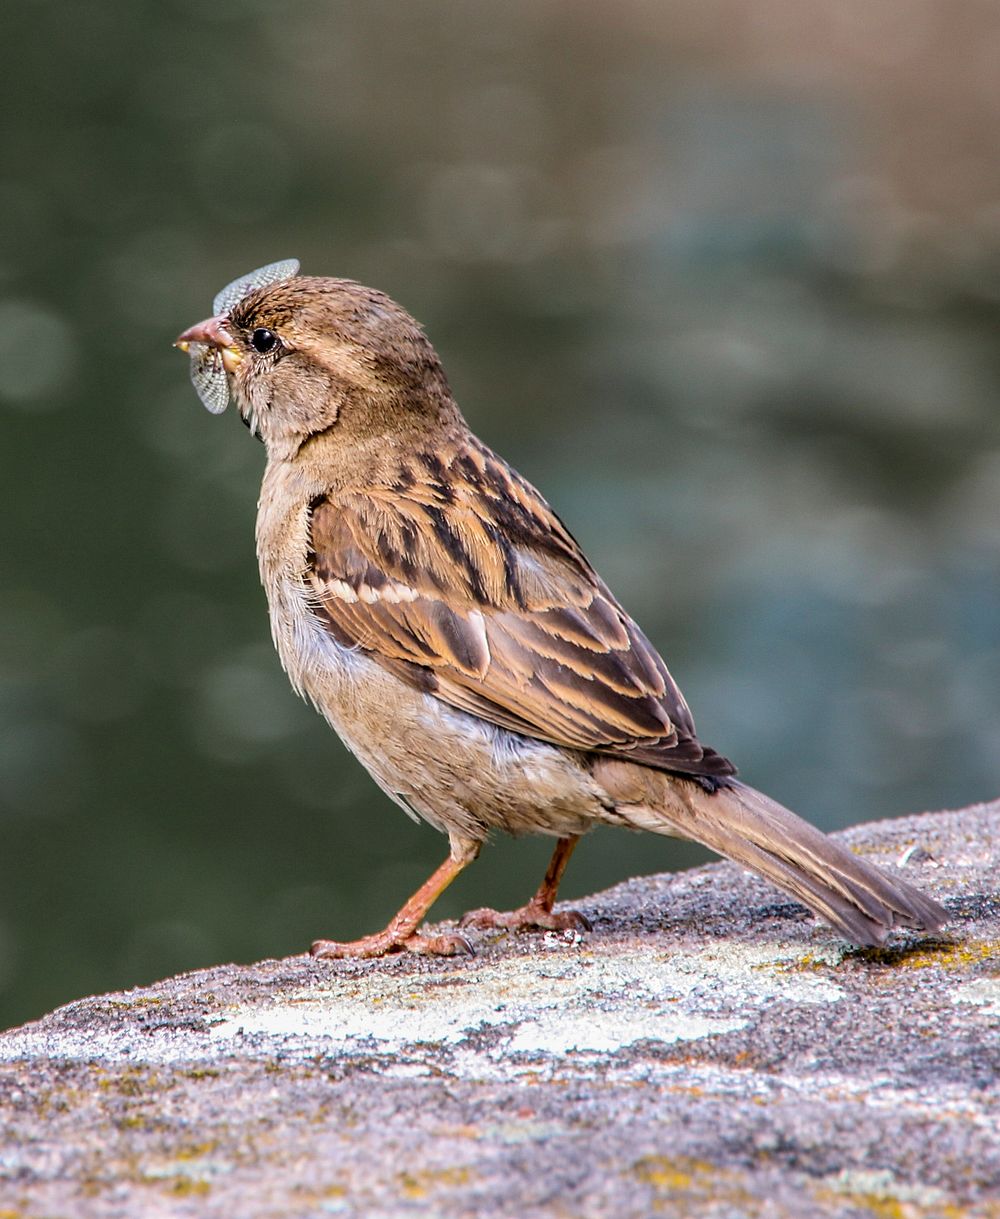 Free close up sparrow image, public domain CC0 photo.